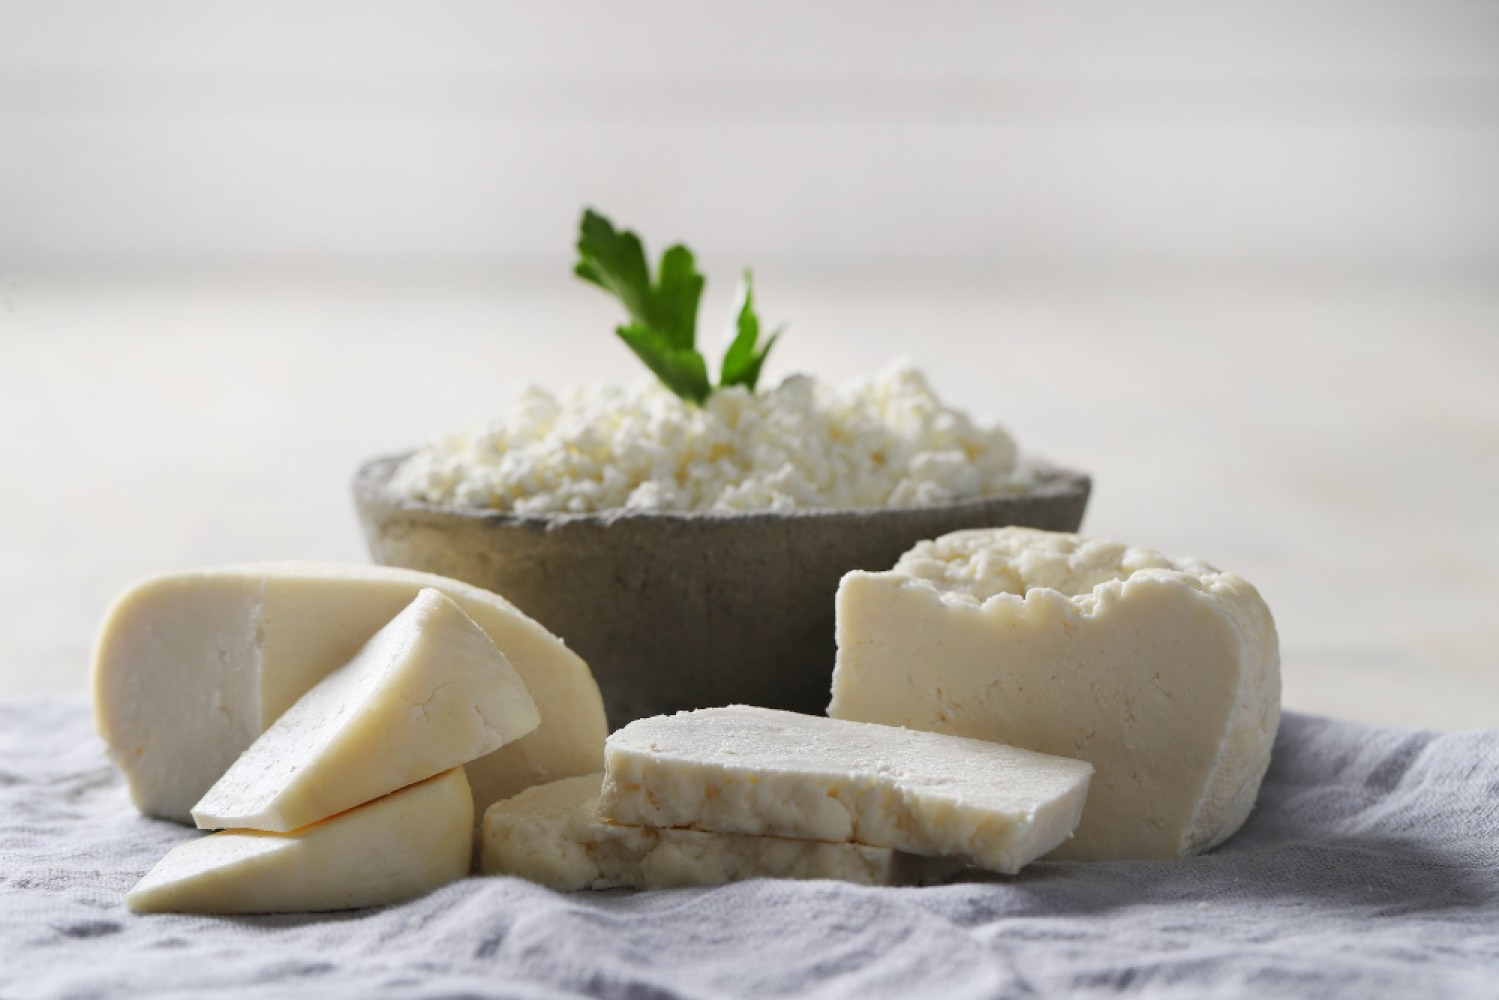 Сыр рикотта — это сыр, родиной которого является Италия. Это свежий мягкий сыр, изготовленный из сыворотки, оставшейся от производства других сыров, таких как моцарелла.